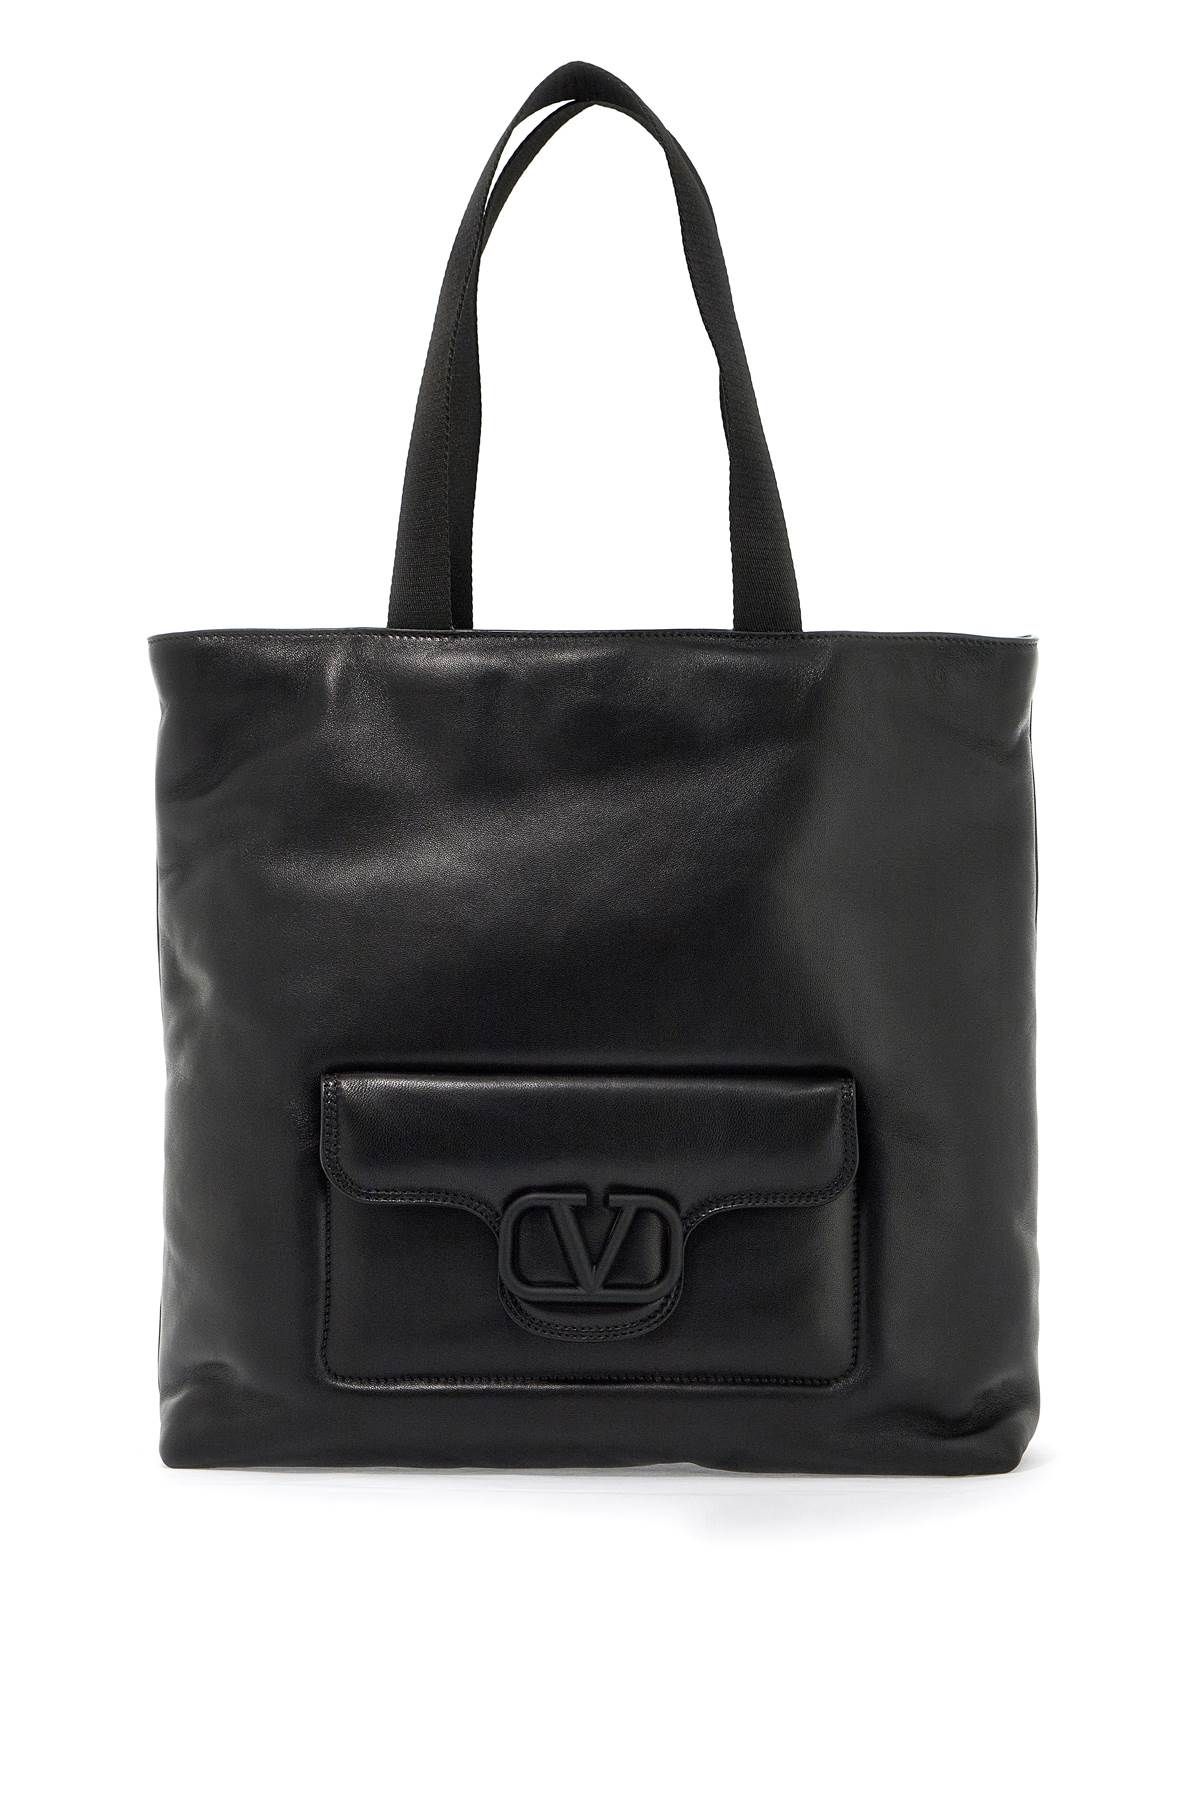 Valentino Garavani Noir Tote Bag In Black